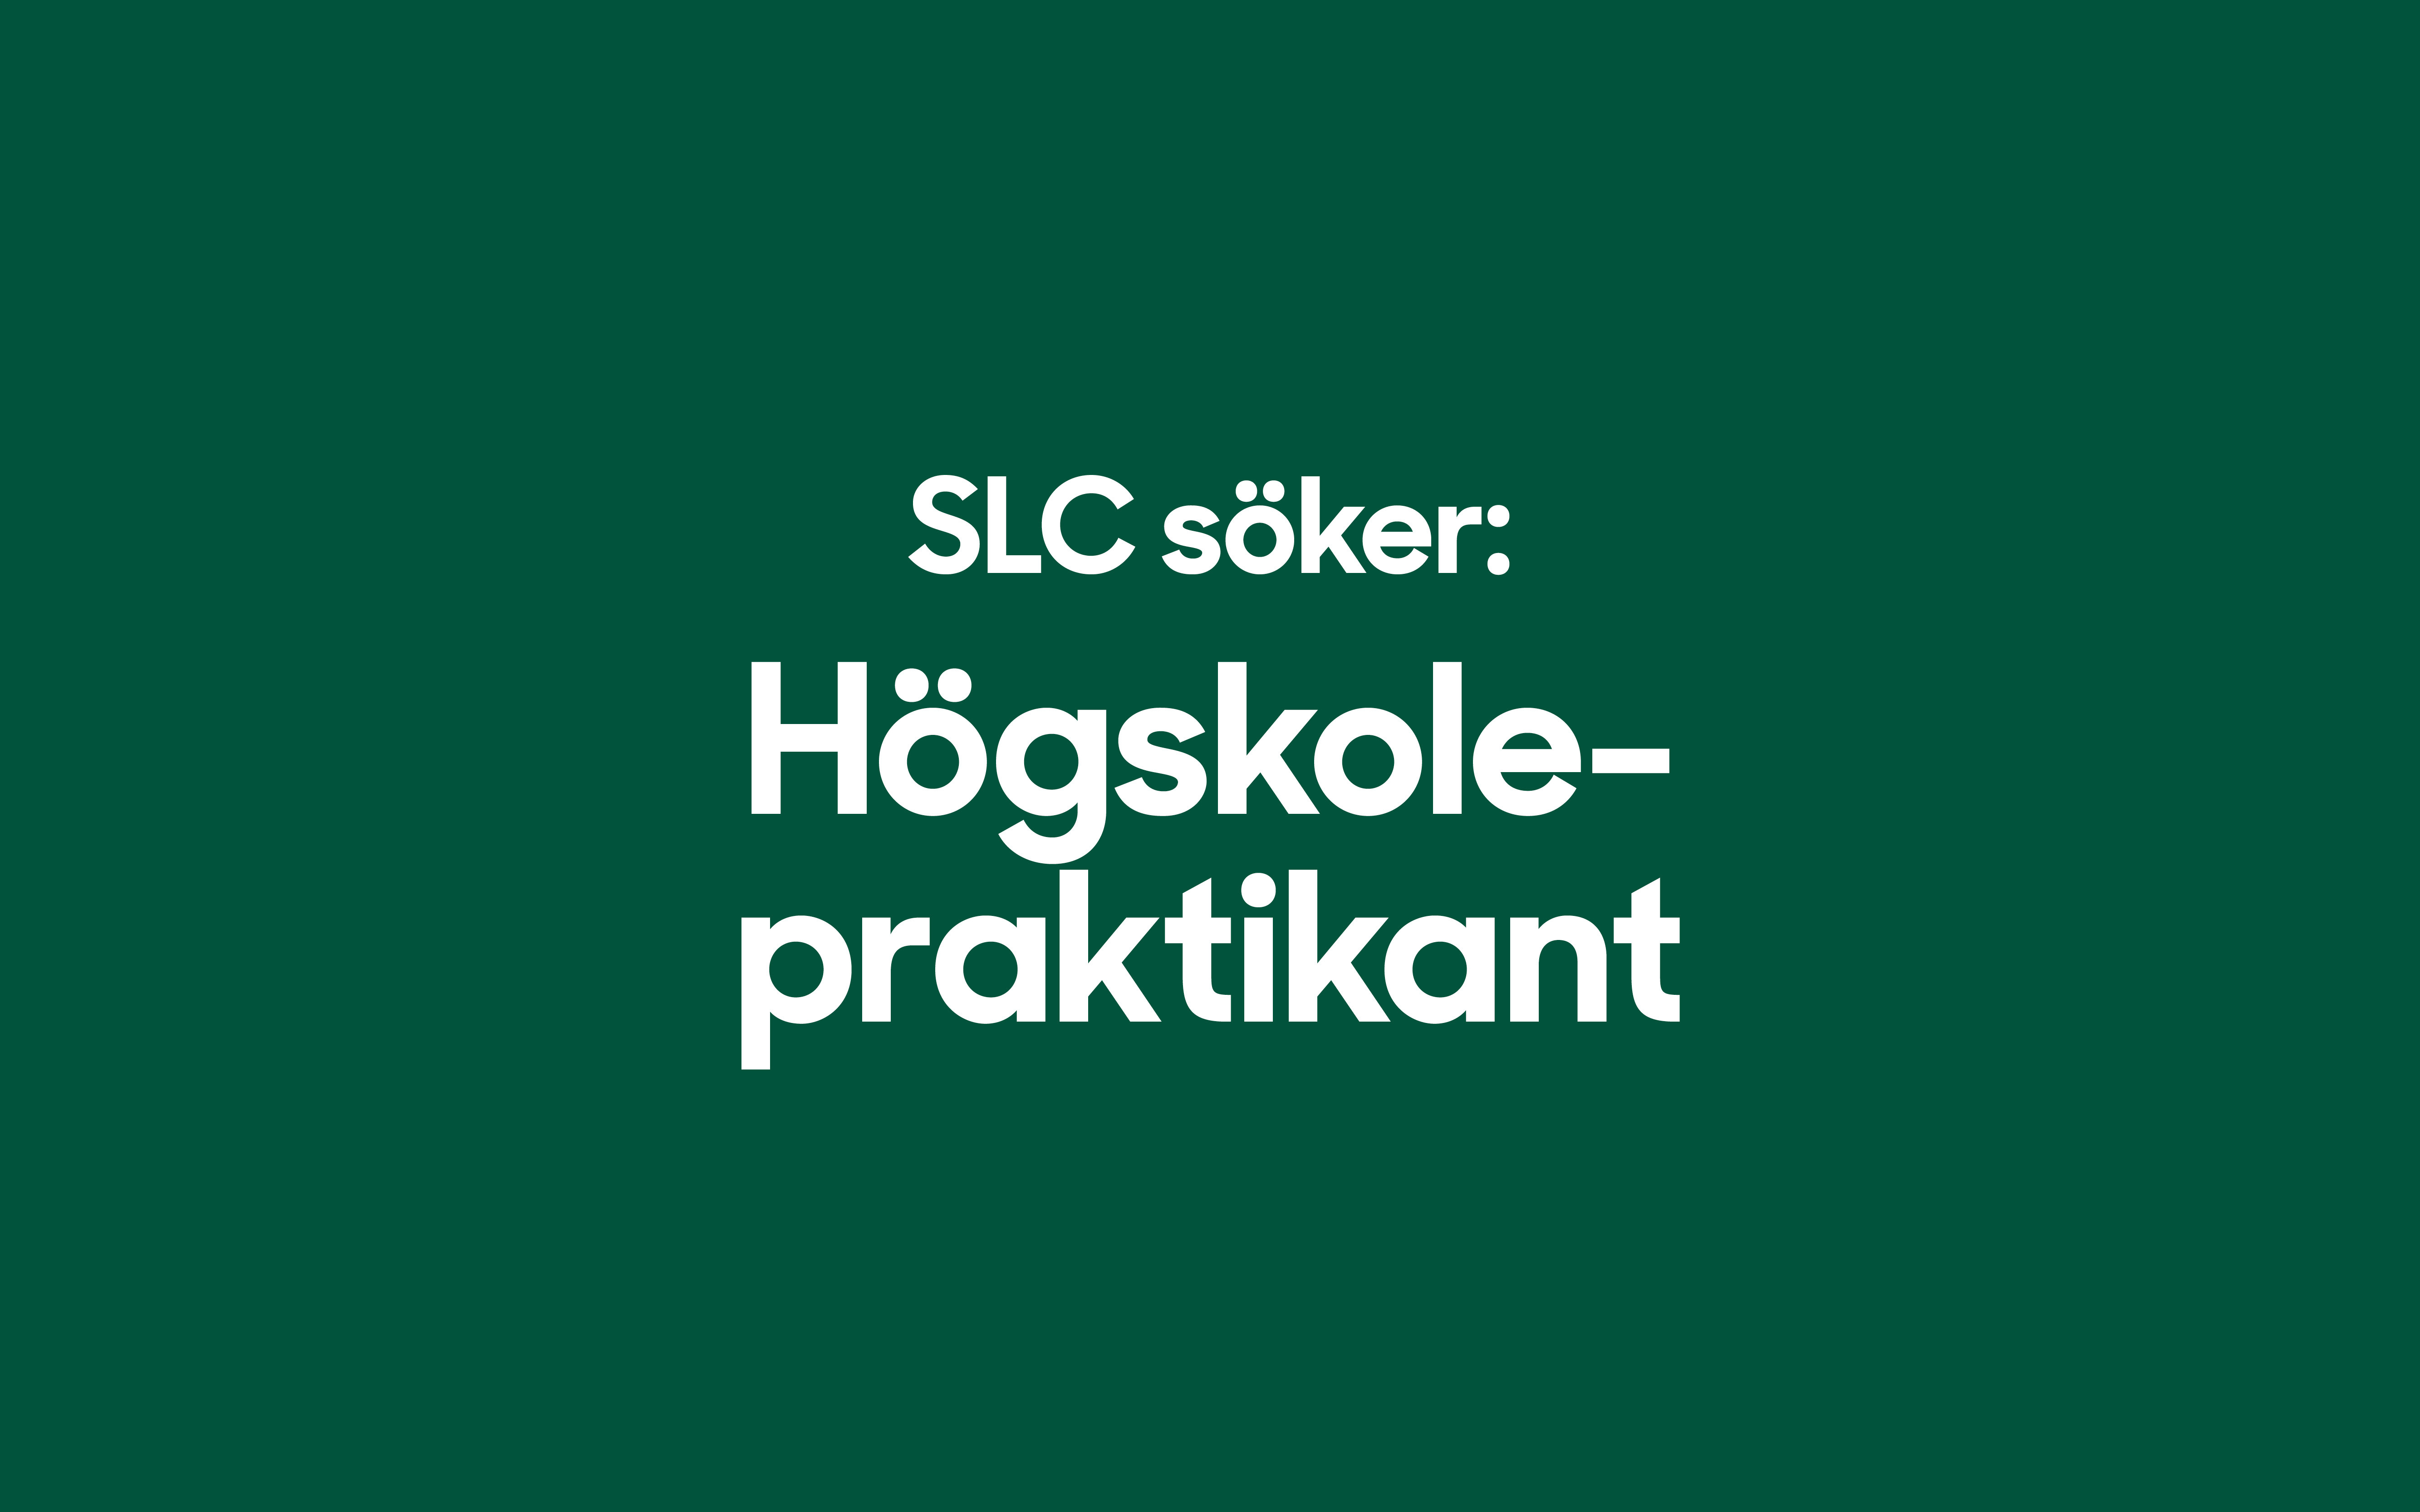 SLC - SLC soker hogskolepraktikant webbanner 2023